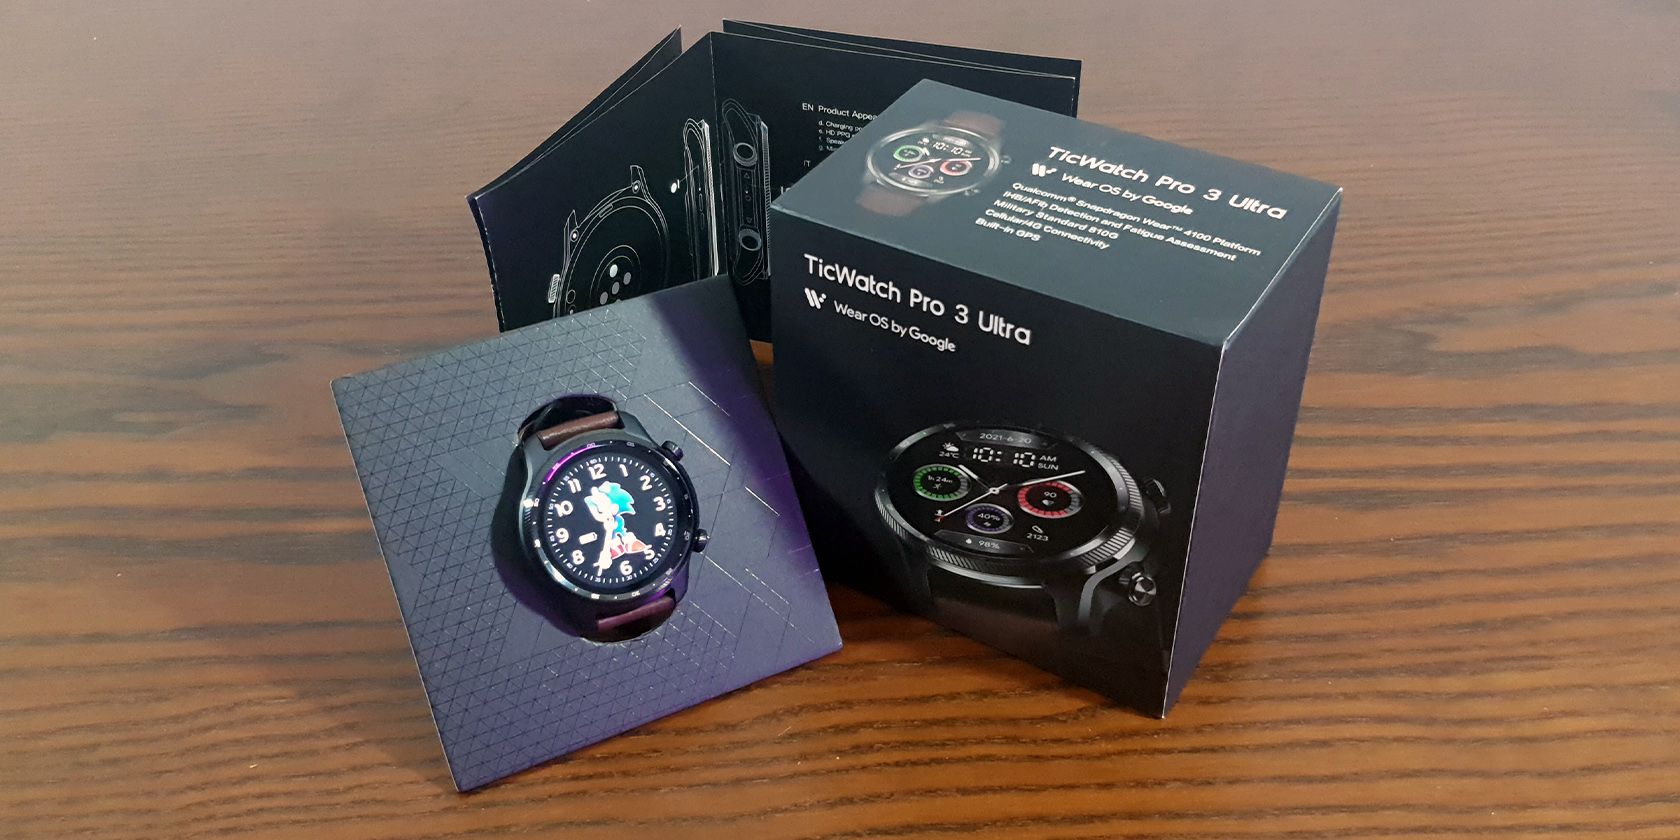 When updates Ticwatch Pro 3 GPS? : r/WearOS